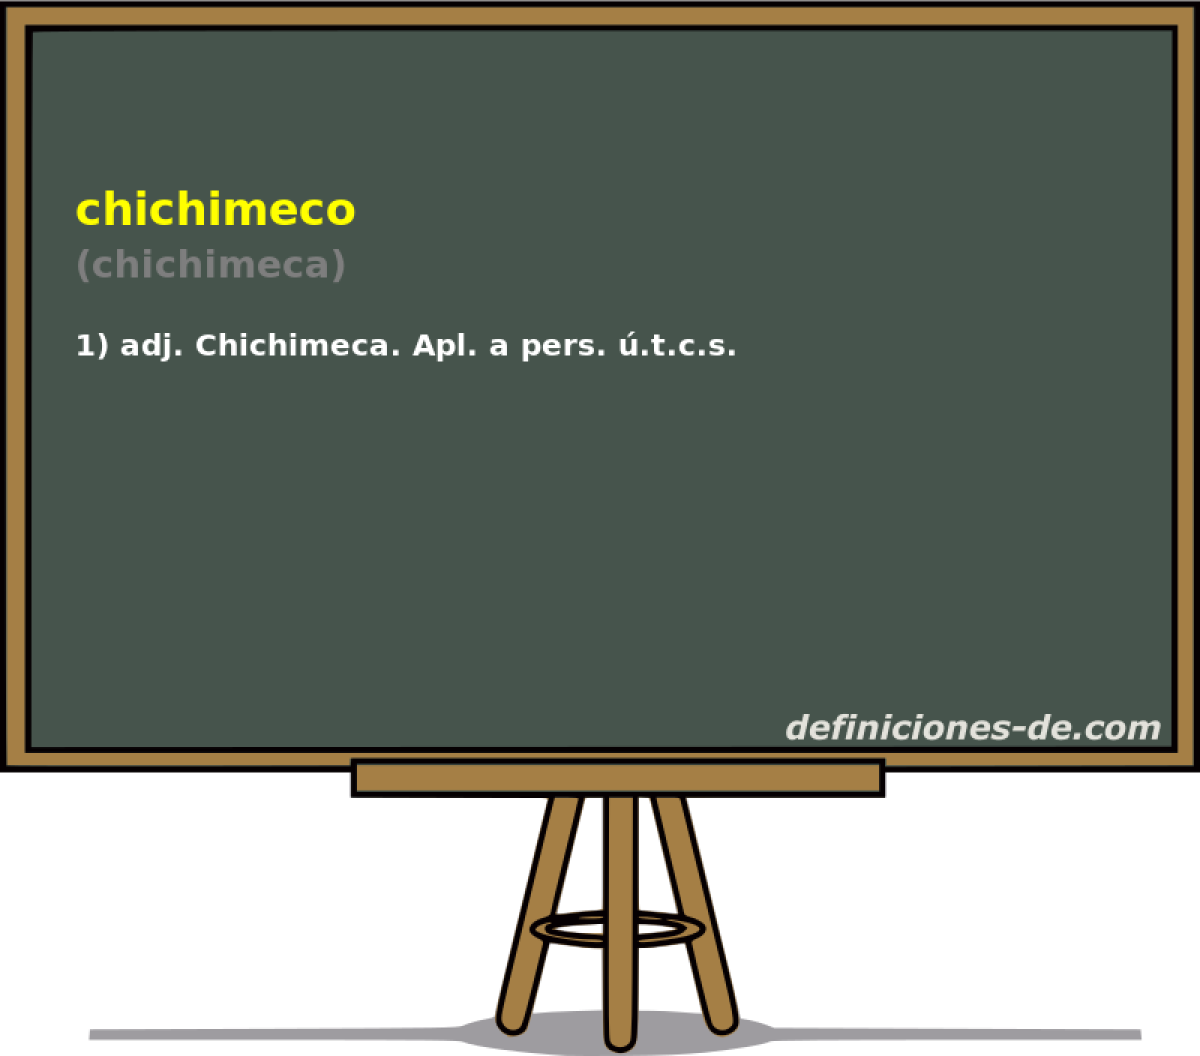 chichimeco (chichimeca)